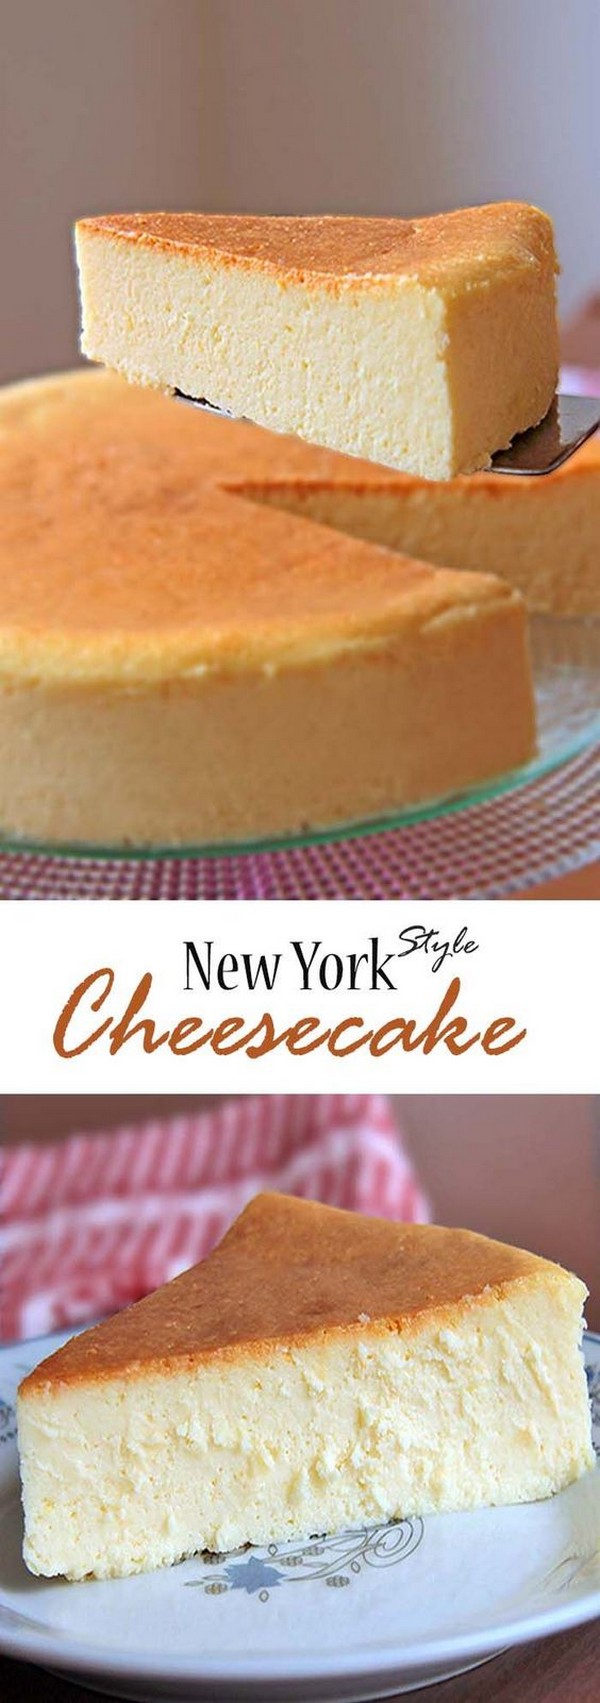 New York Style Cheesecake